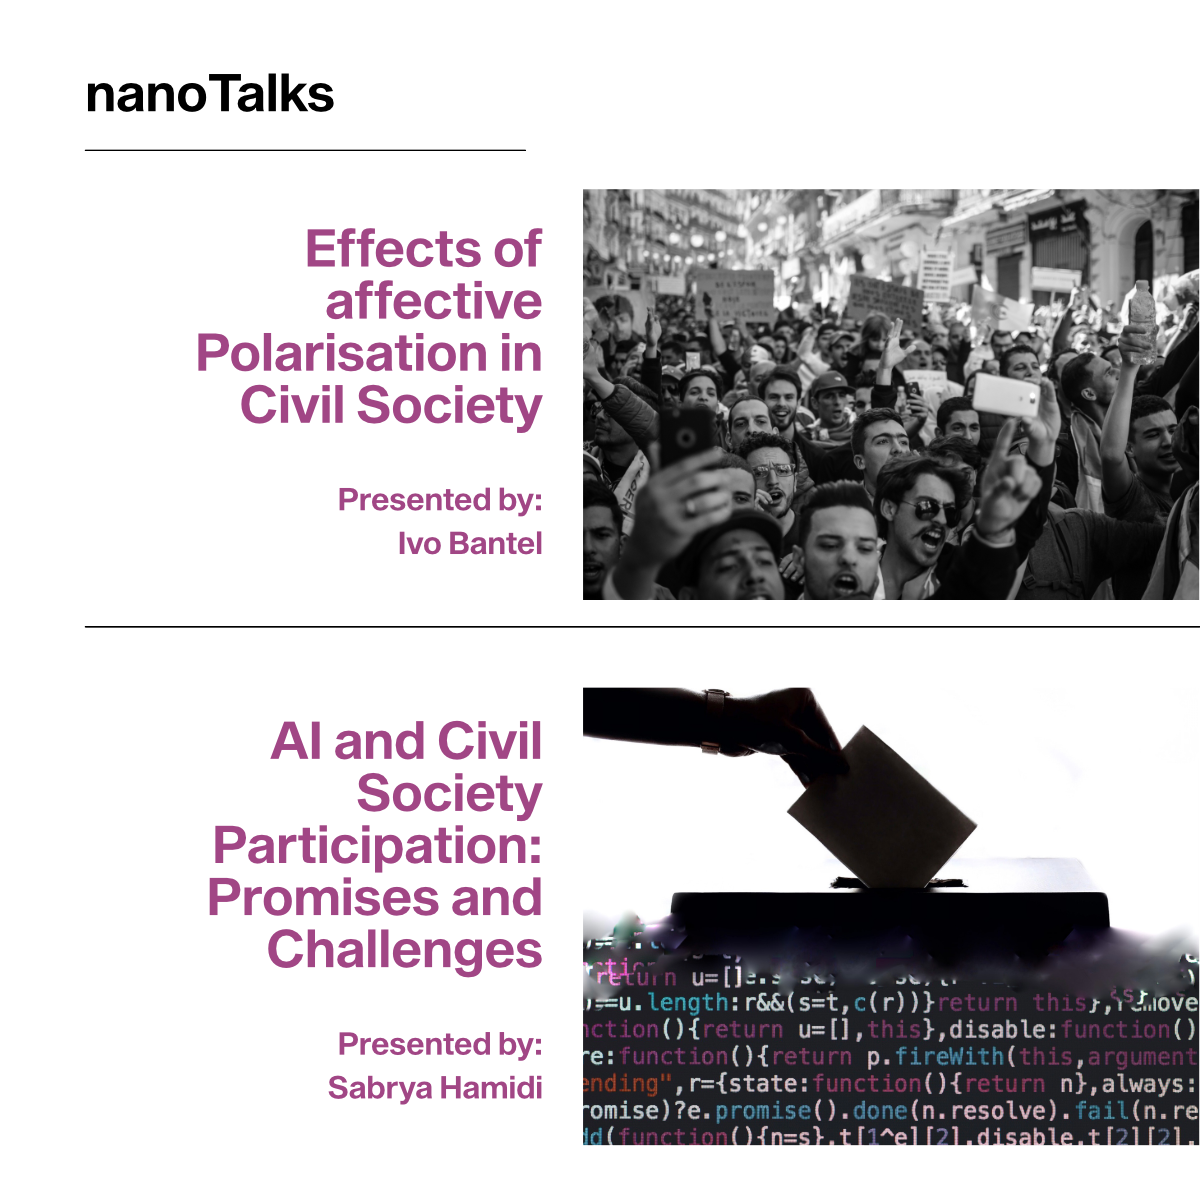 20210325 nano Talk Websit Visual